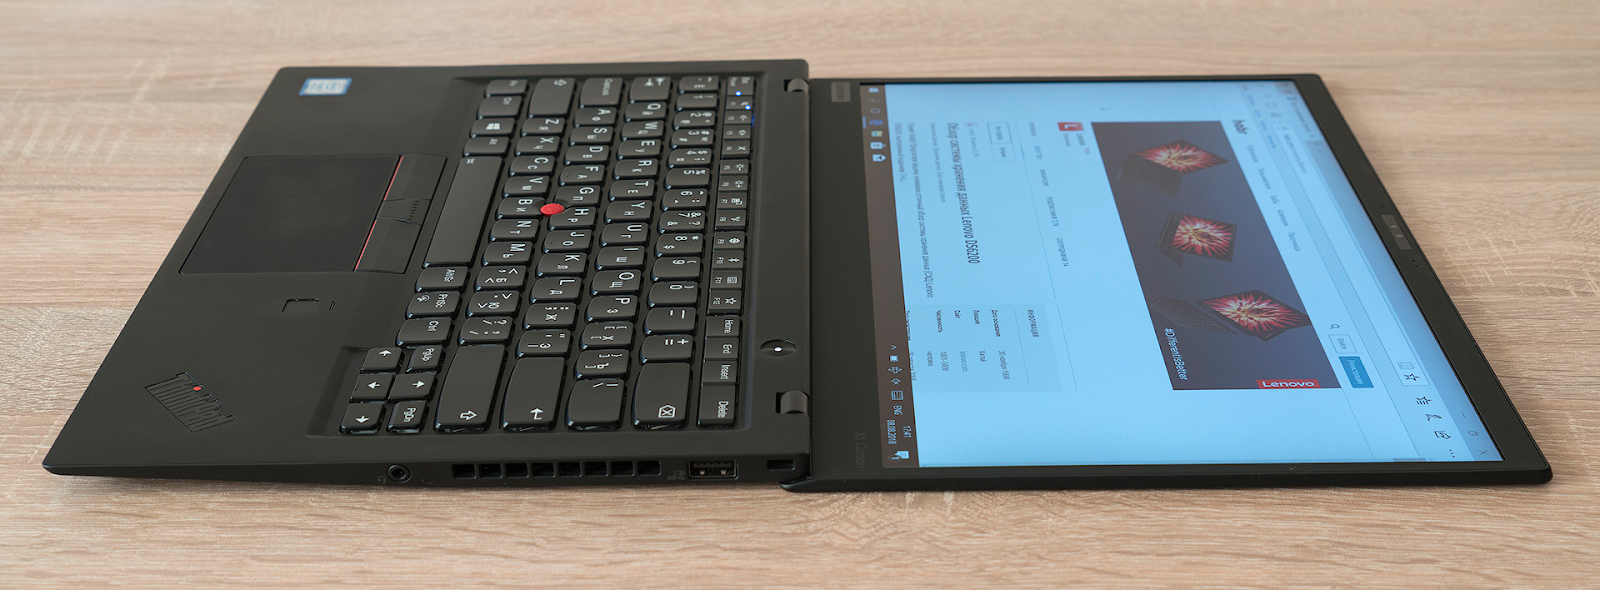 Обзор ноутбука Lenovo ThinkPad X1 Carbon (2018): лёгкий, удобный, мощный - 11